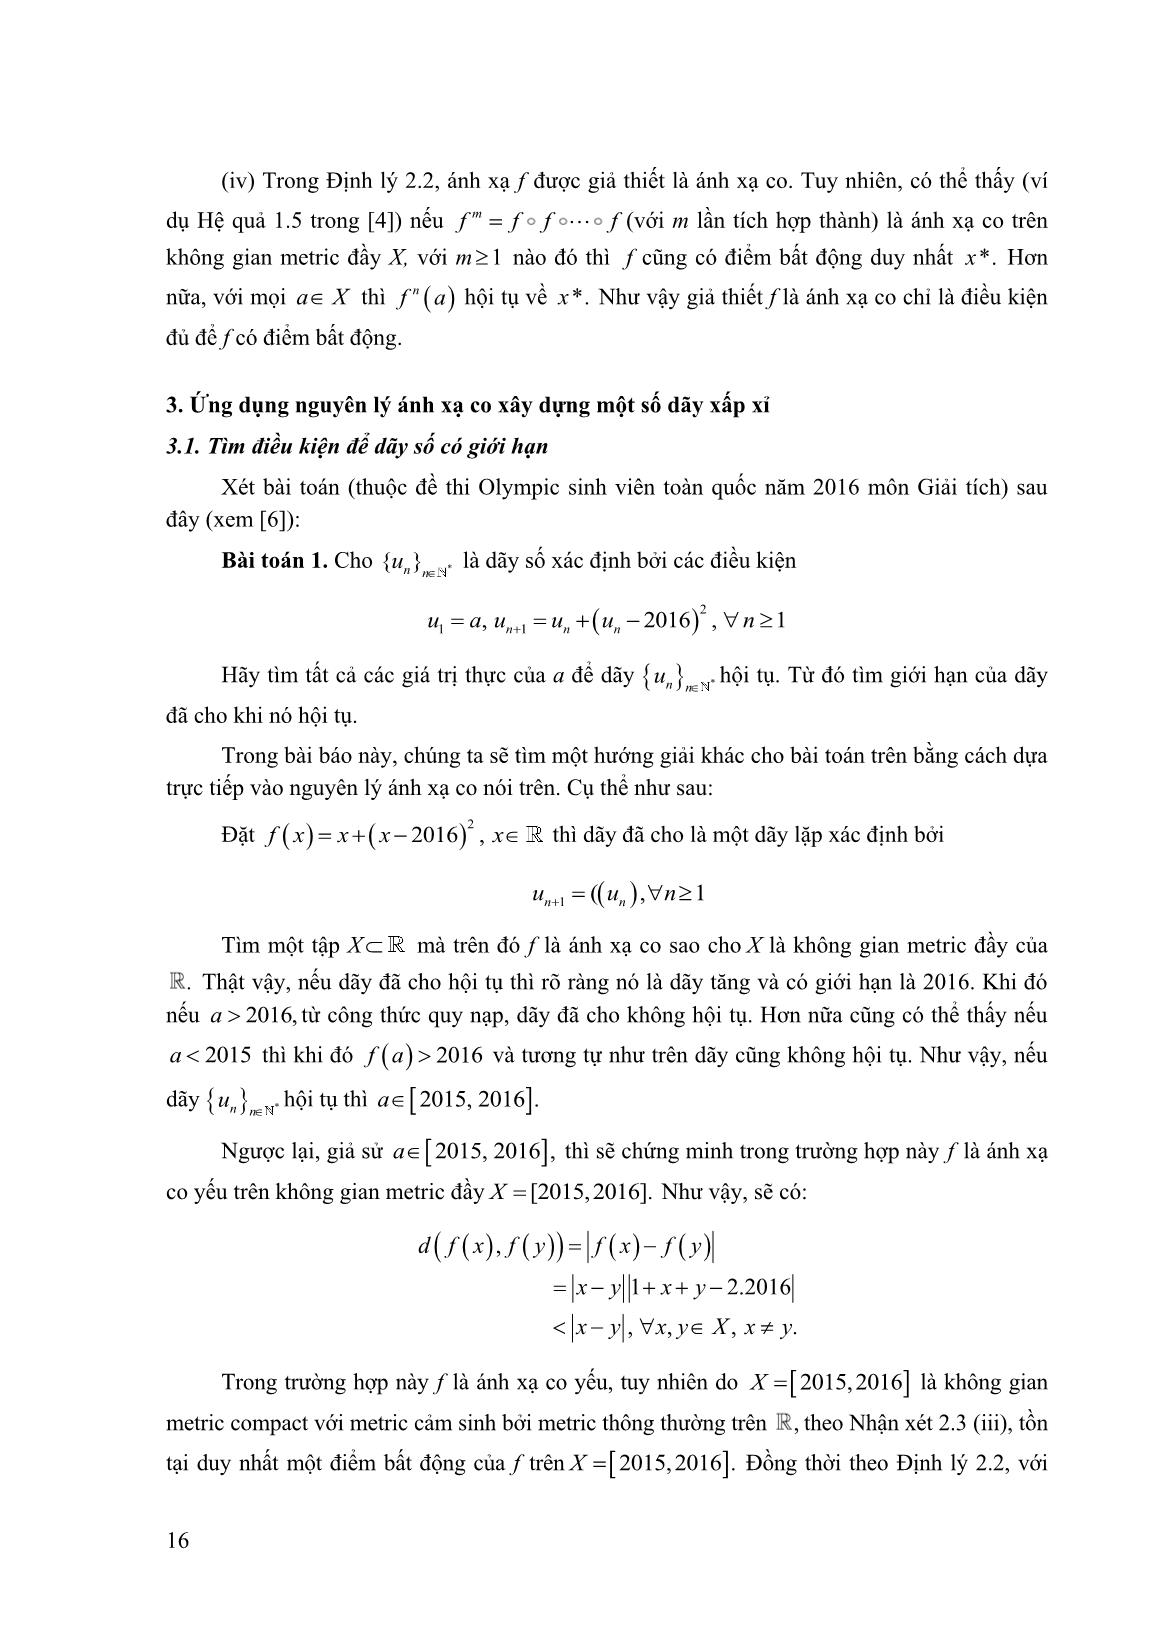 Một số ứng dụng của nguyên lý ánh xạ co trong không gian Metric trang 3